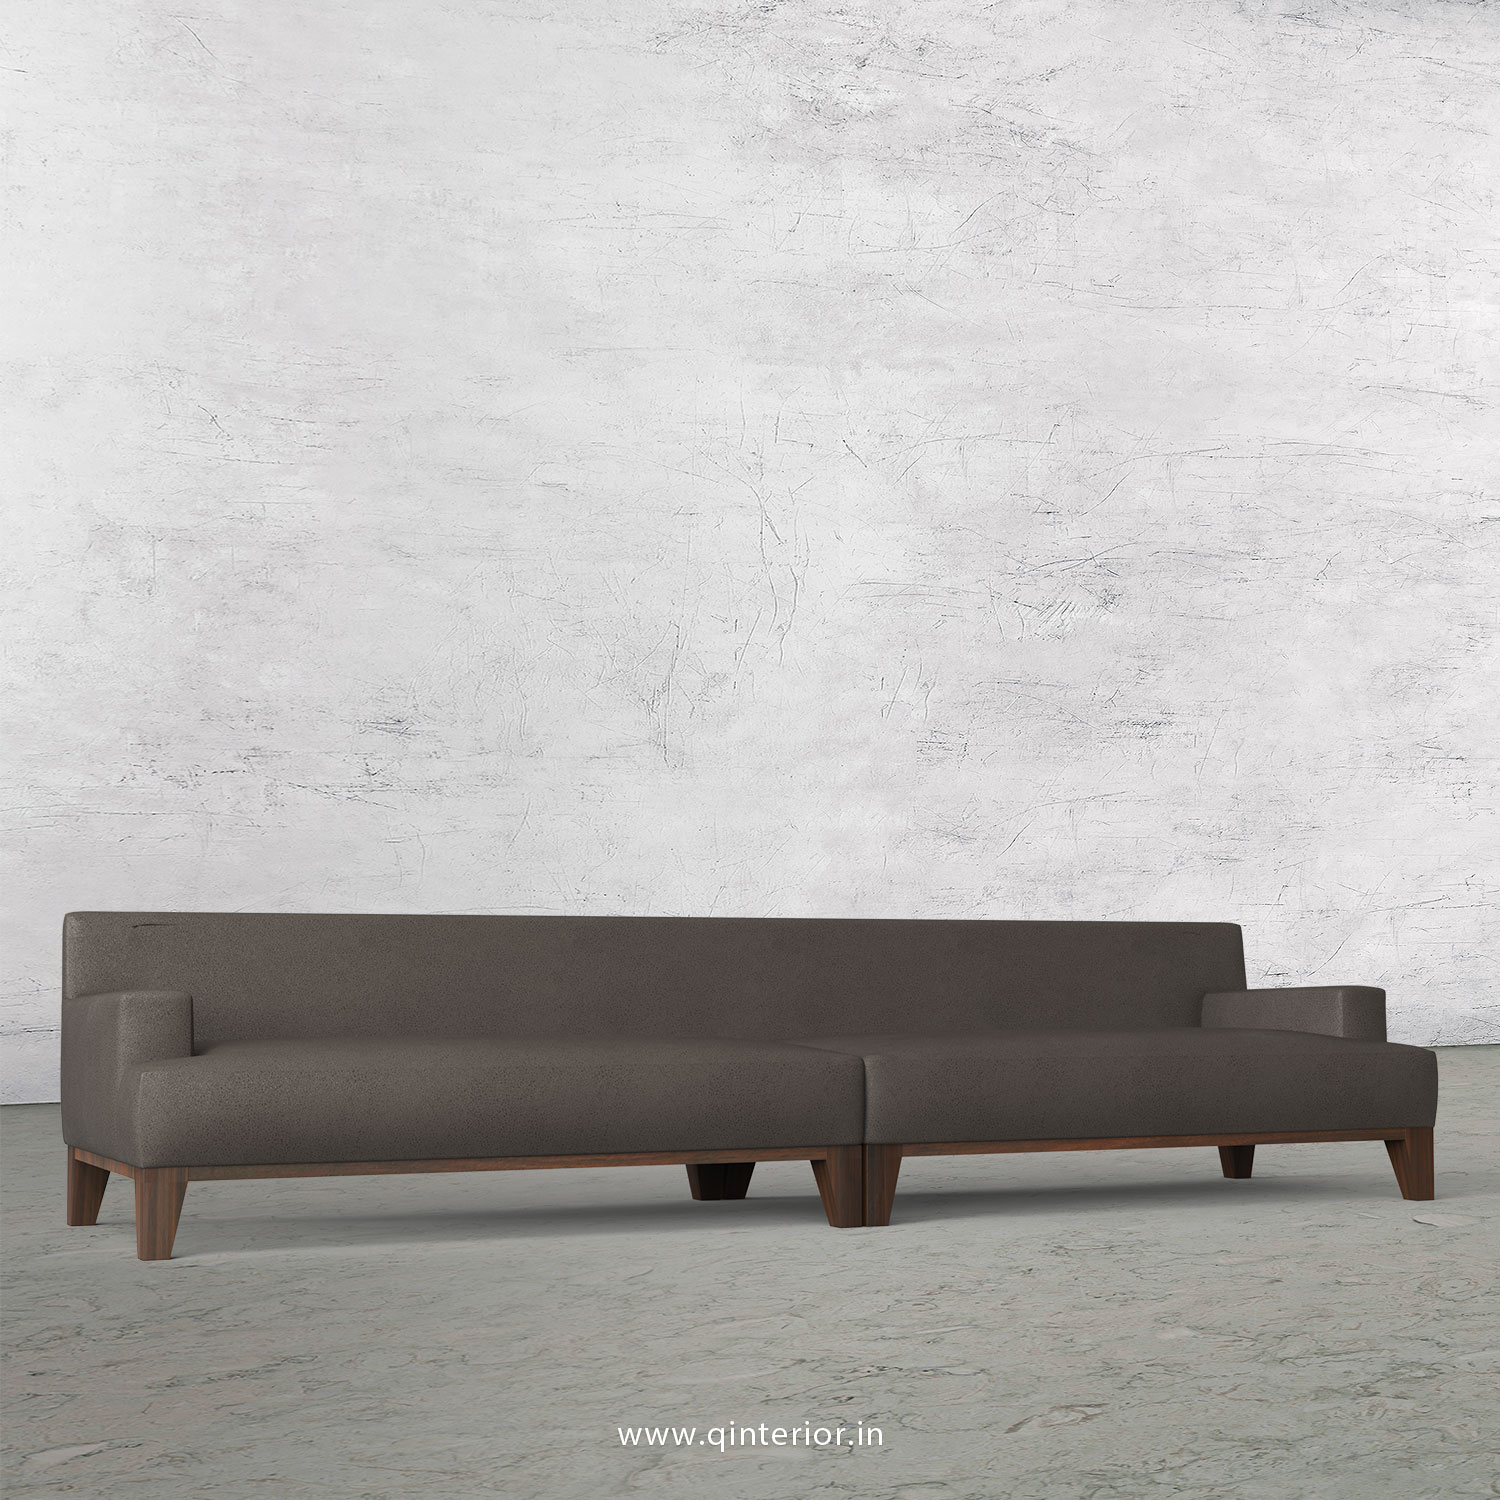 QUADRO 4 Seater Sofa in Fab Leather Fabric - SFA010 FL15